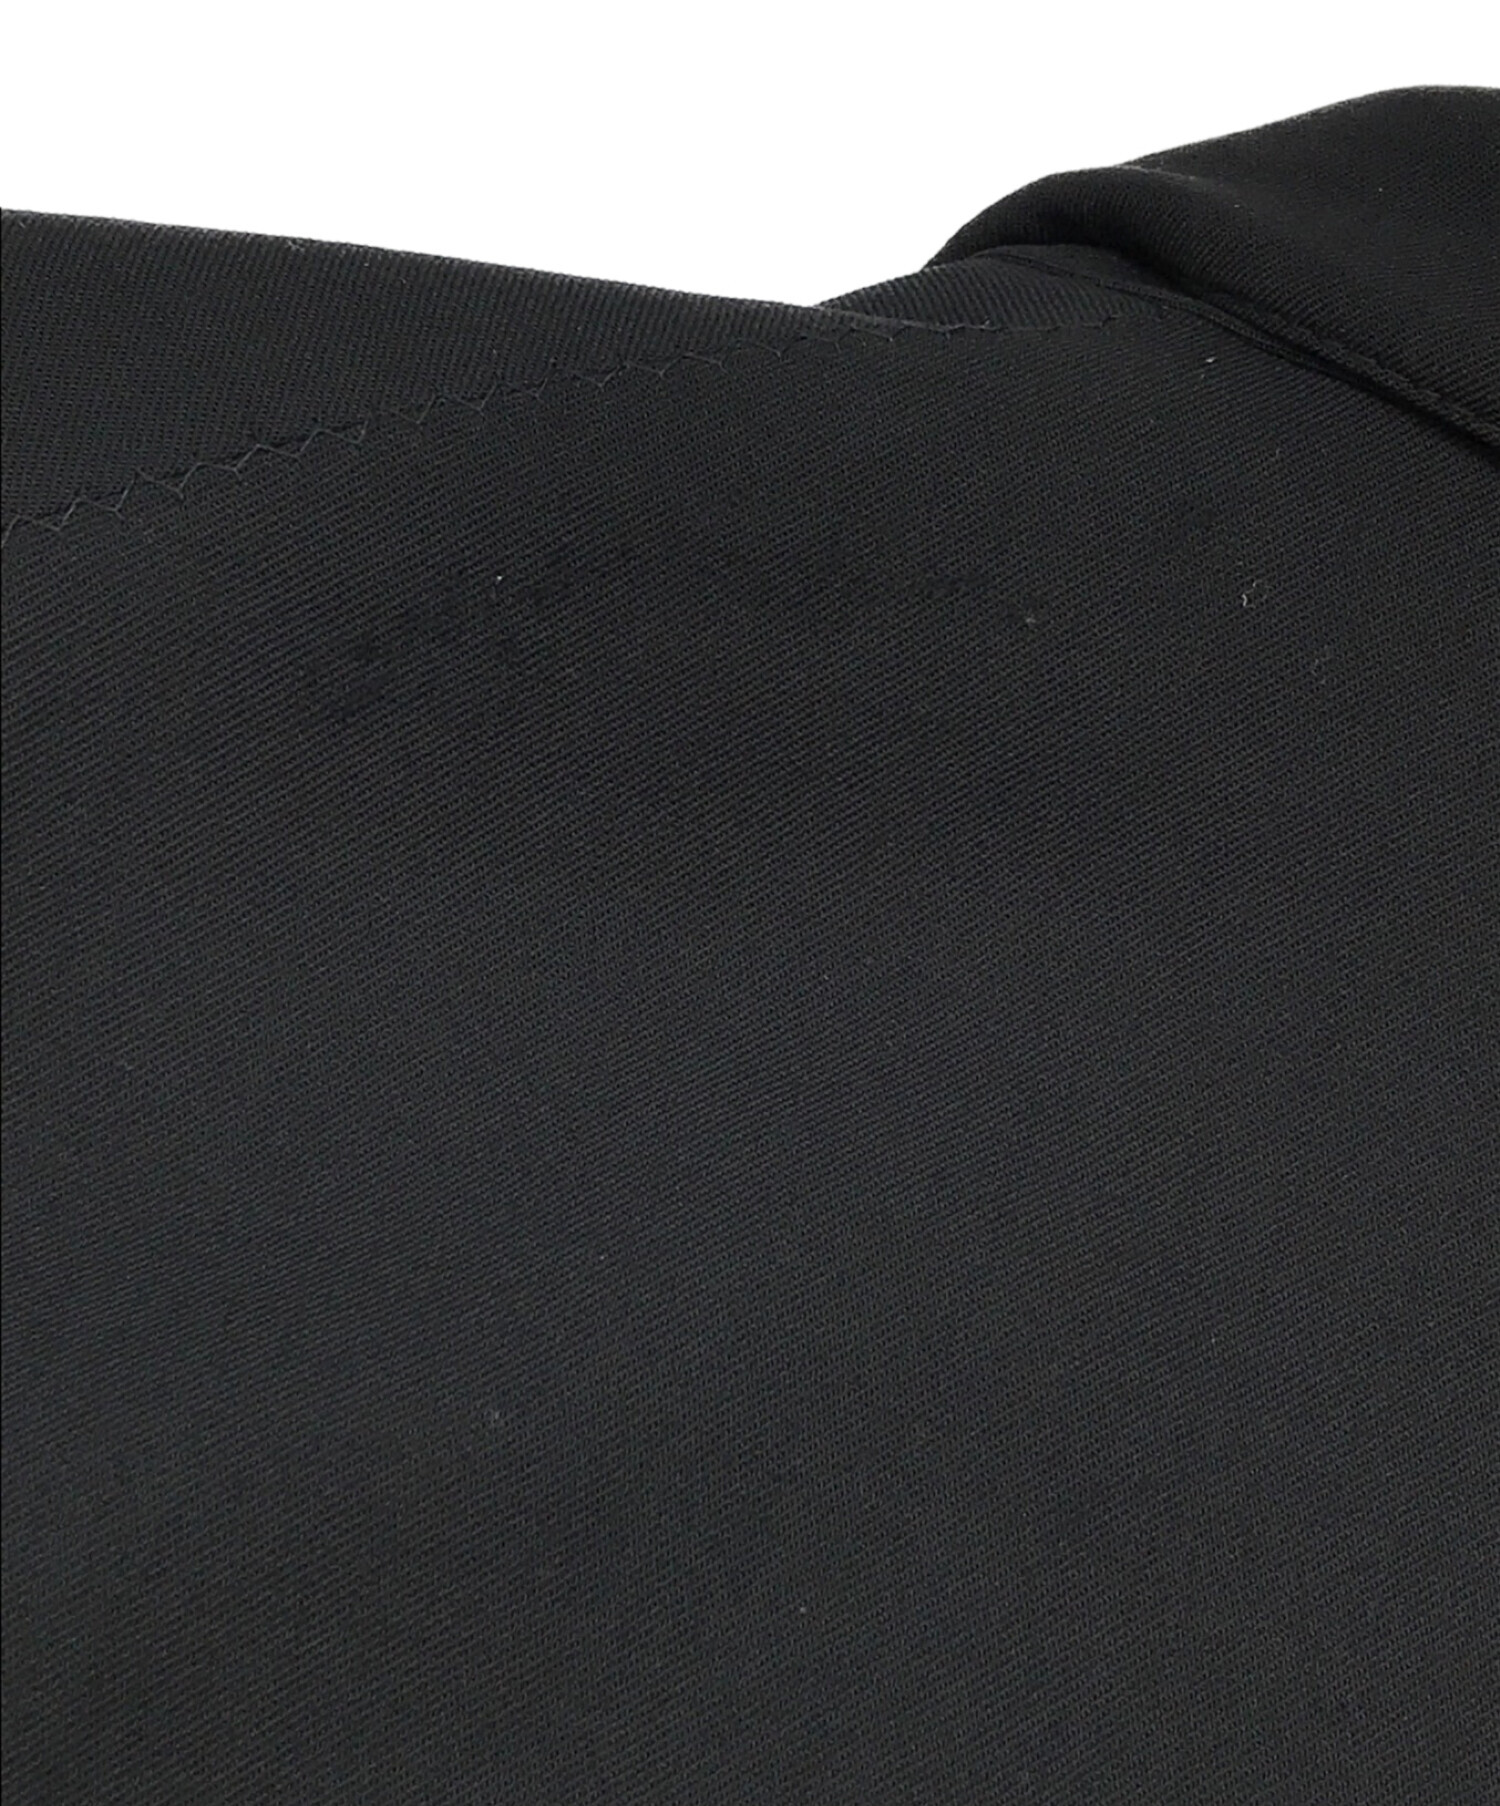 Jean Paul GAULTIER HOMME (ジャンポールゴルチェオム) マルチポケットジップデザインジャケット ブラック サイズ:48